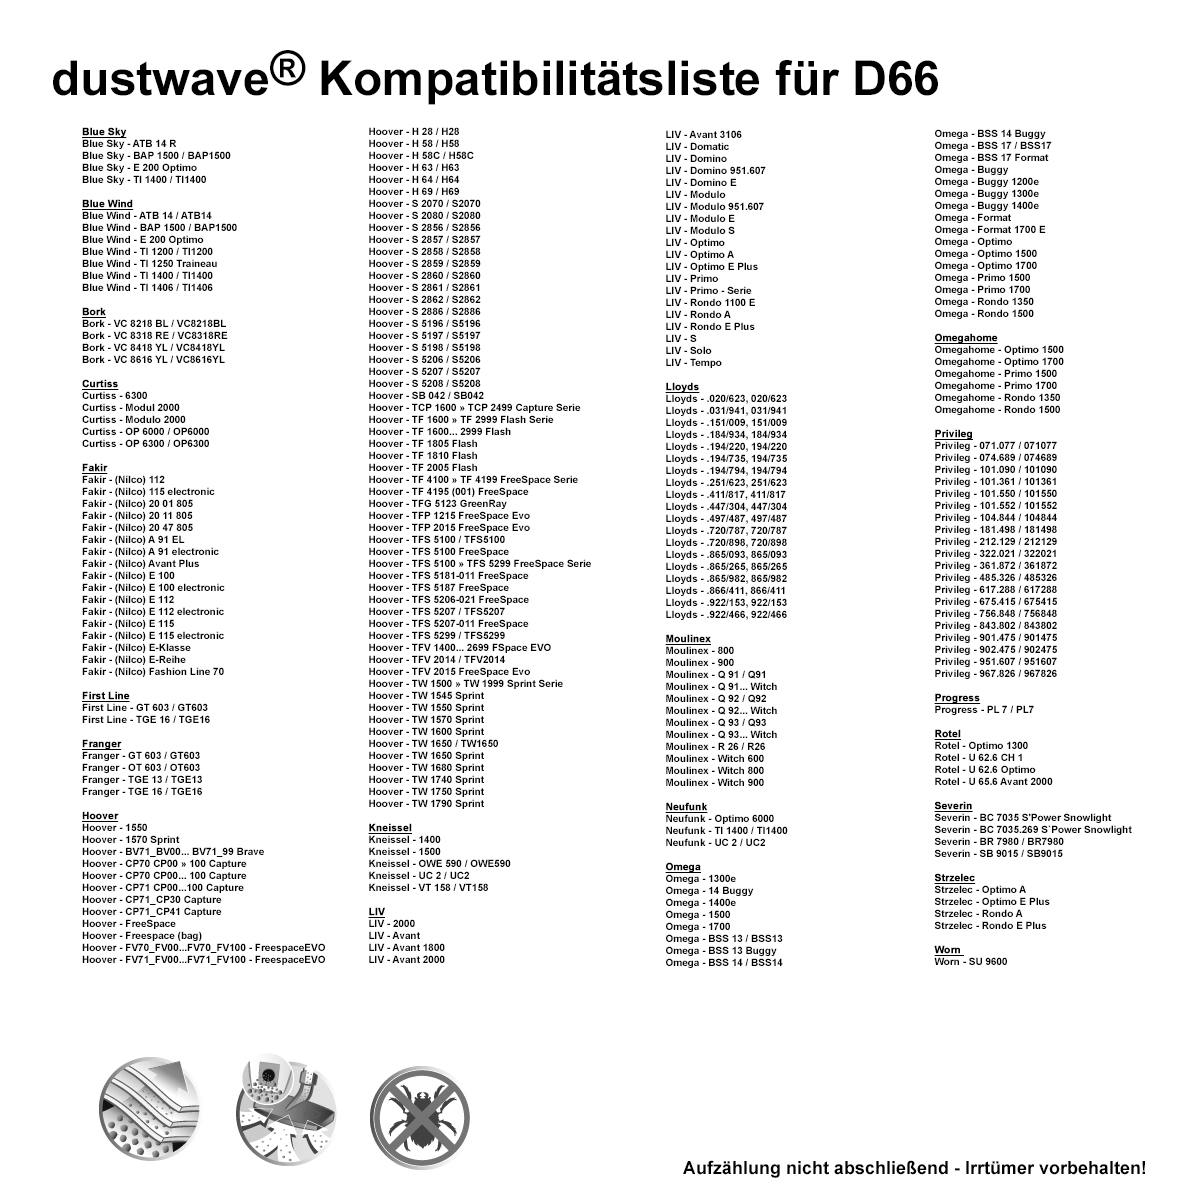 Dustwave® 10 Staubsaugerbeutel für Hoover TCP2120 - hocheffizient, mehrlagiges Mikrovlies mit Hygieneverschluss - Made in Germany